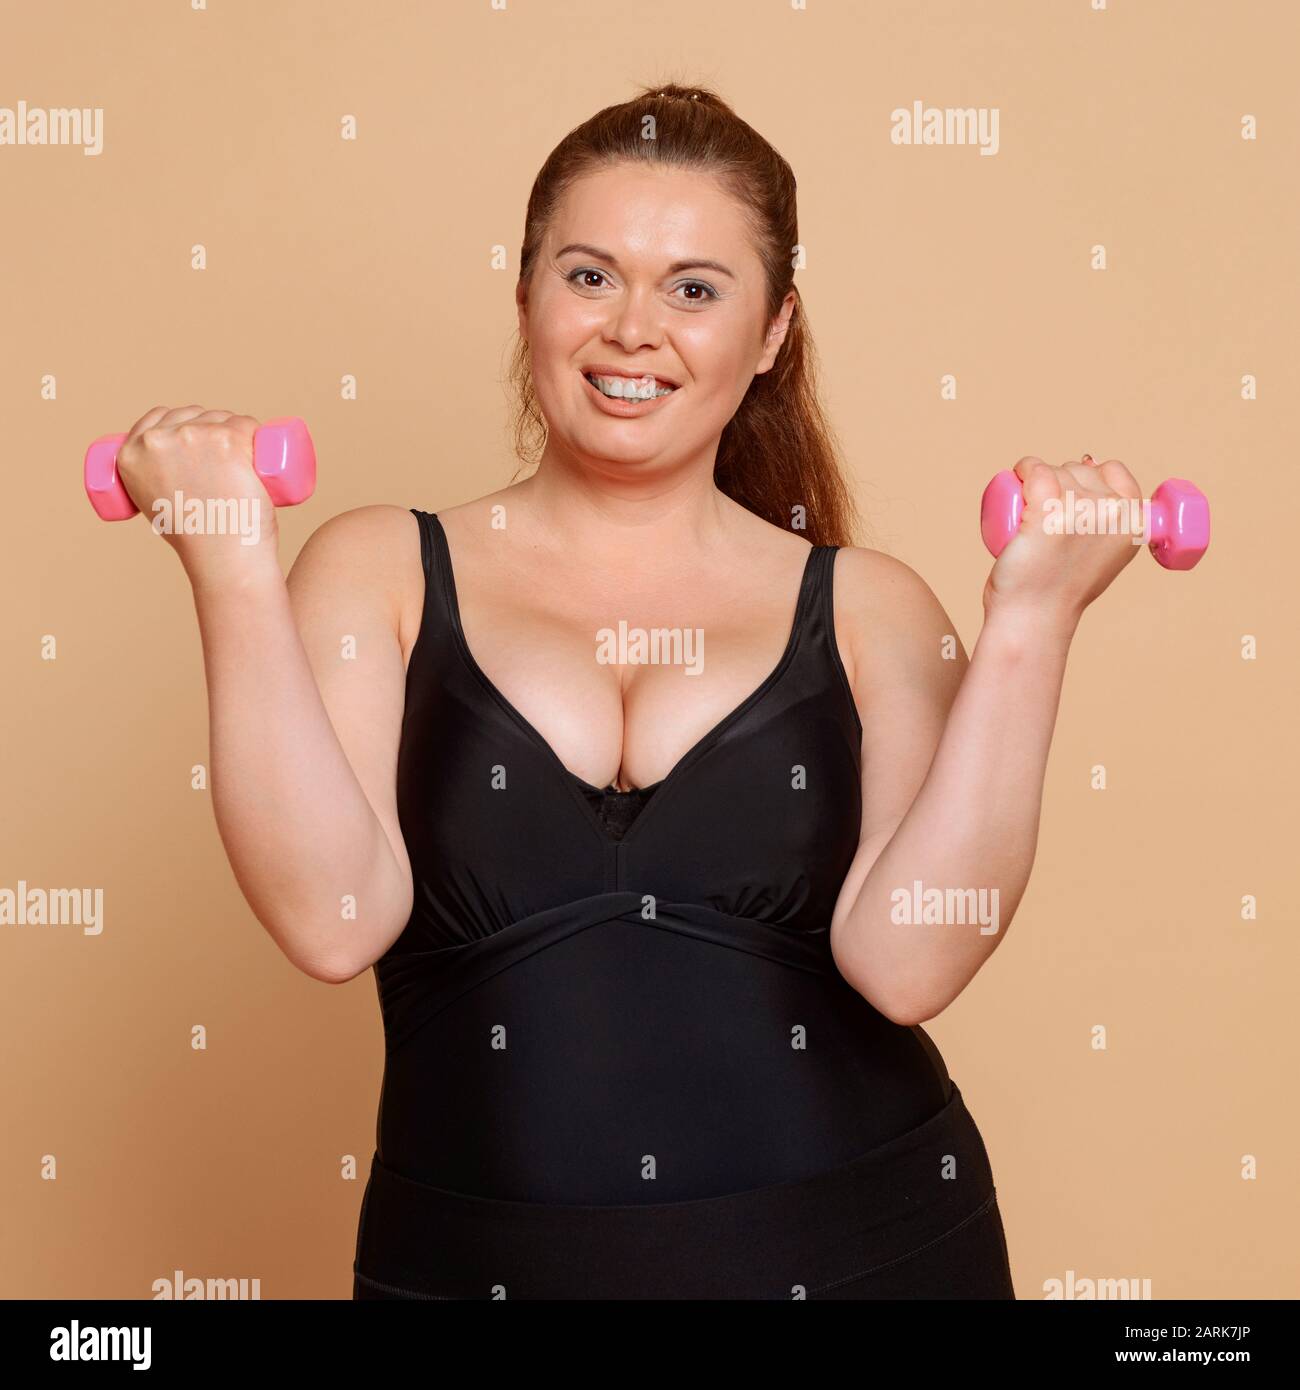 Positiv übergewichtige Frau mit Hanteln auf beigem Hintergrund Stockfoto